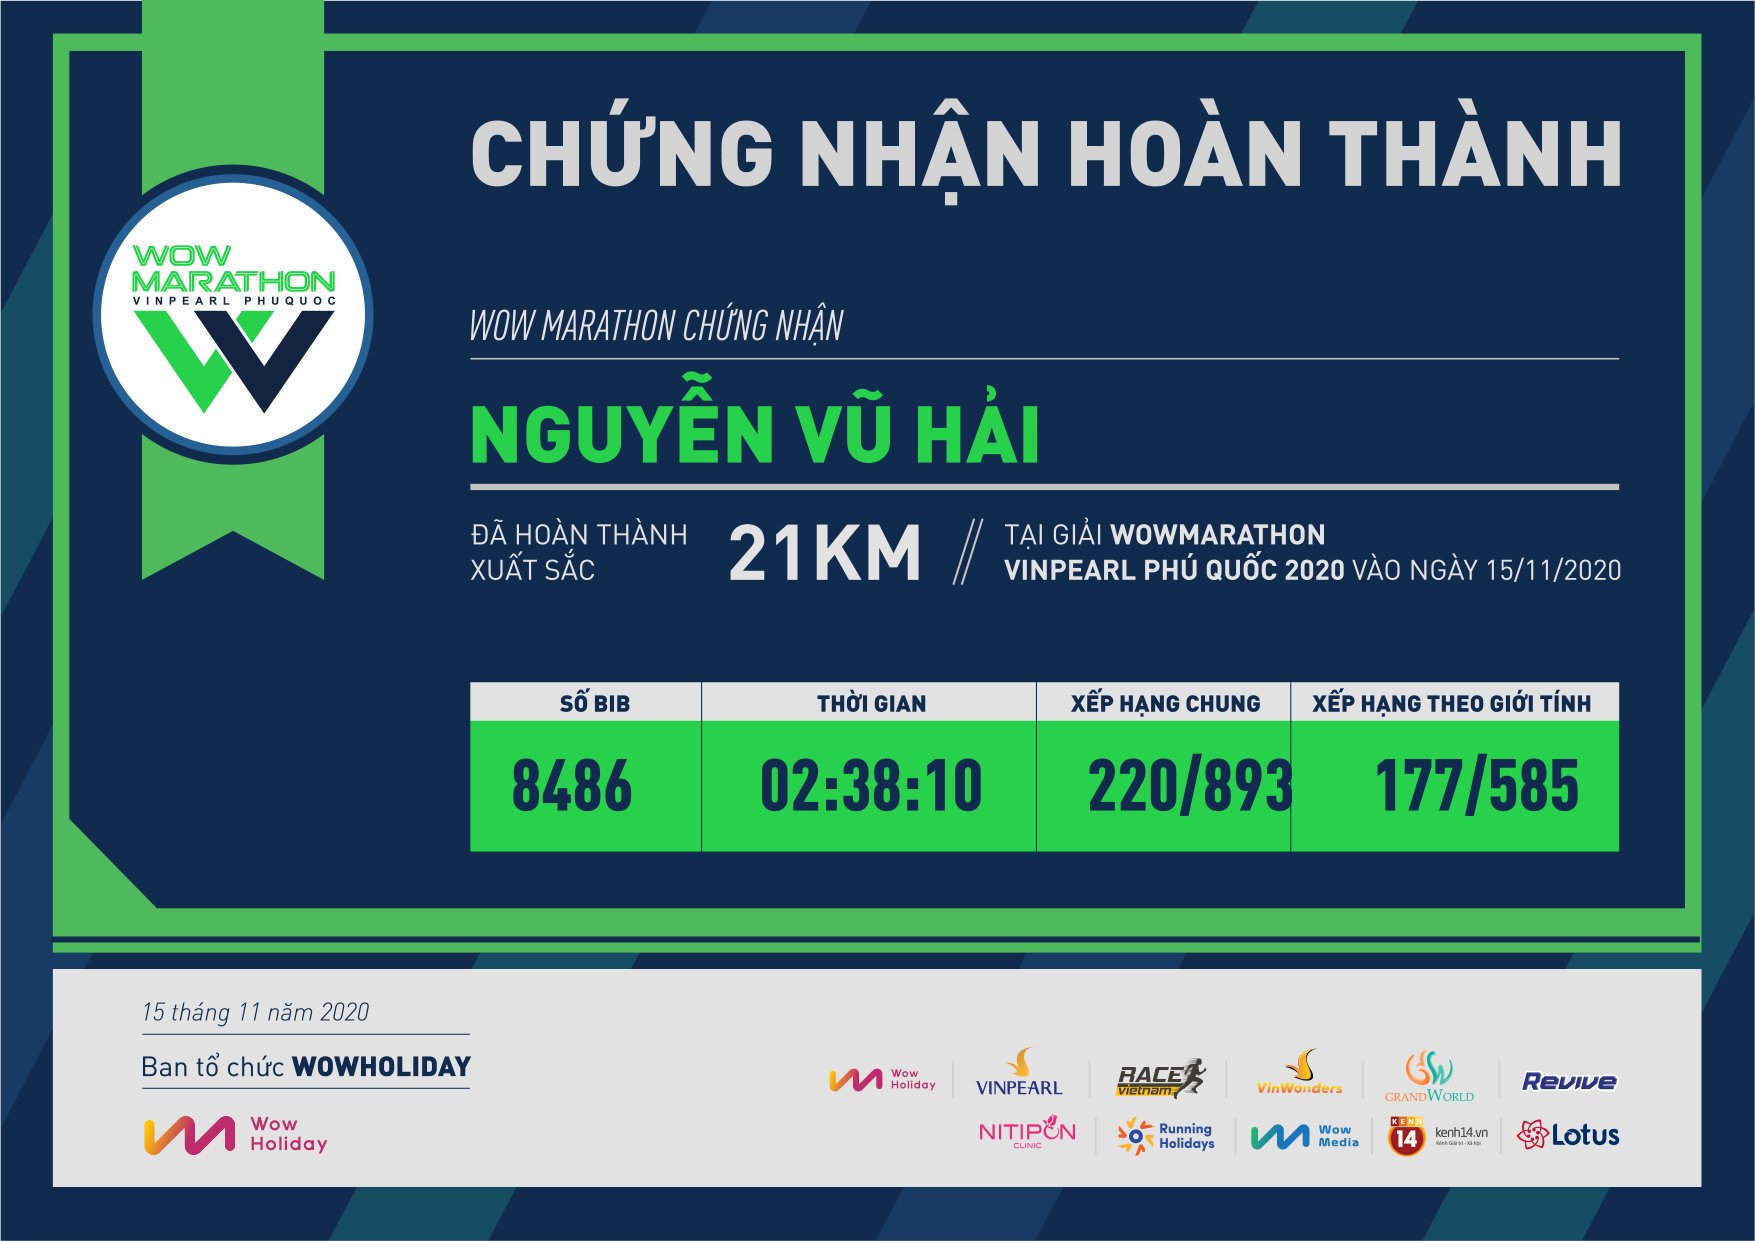 8486 - Nguyễn Vũ Hải